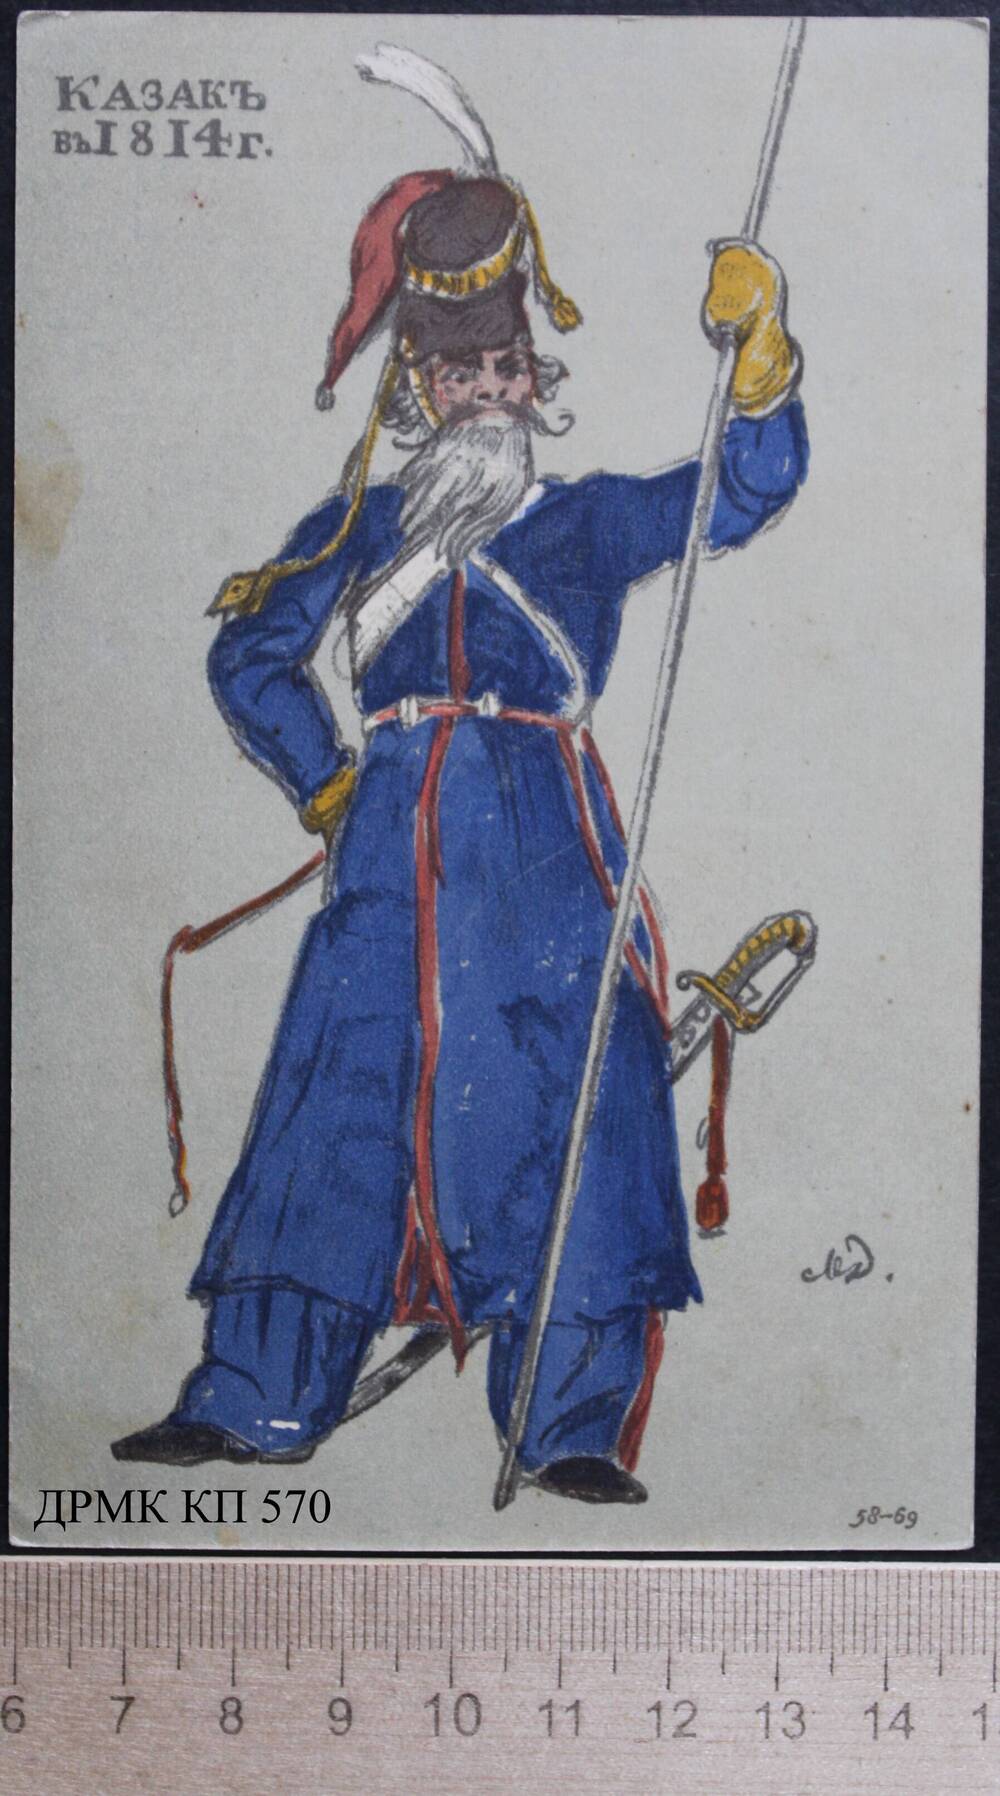 Почтовая карточка «Казакъ въ 1814 г.»